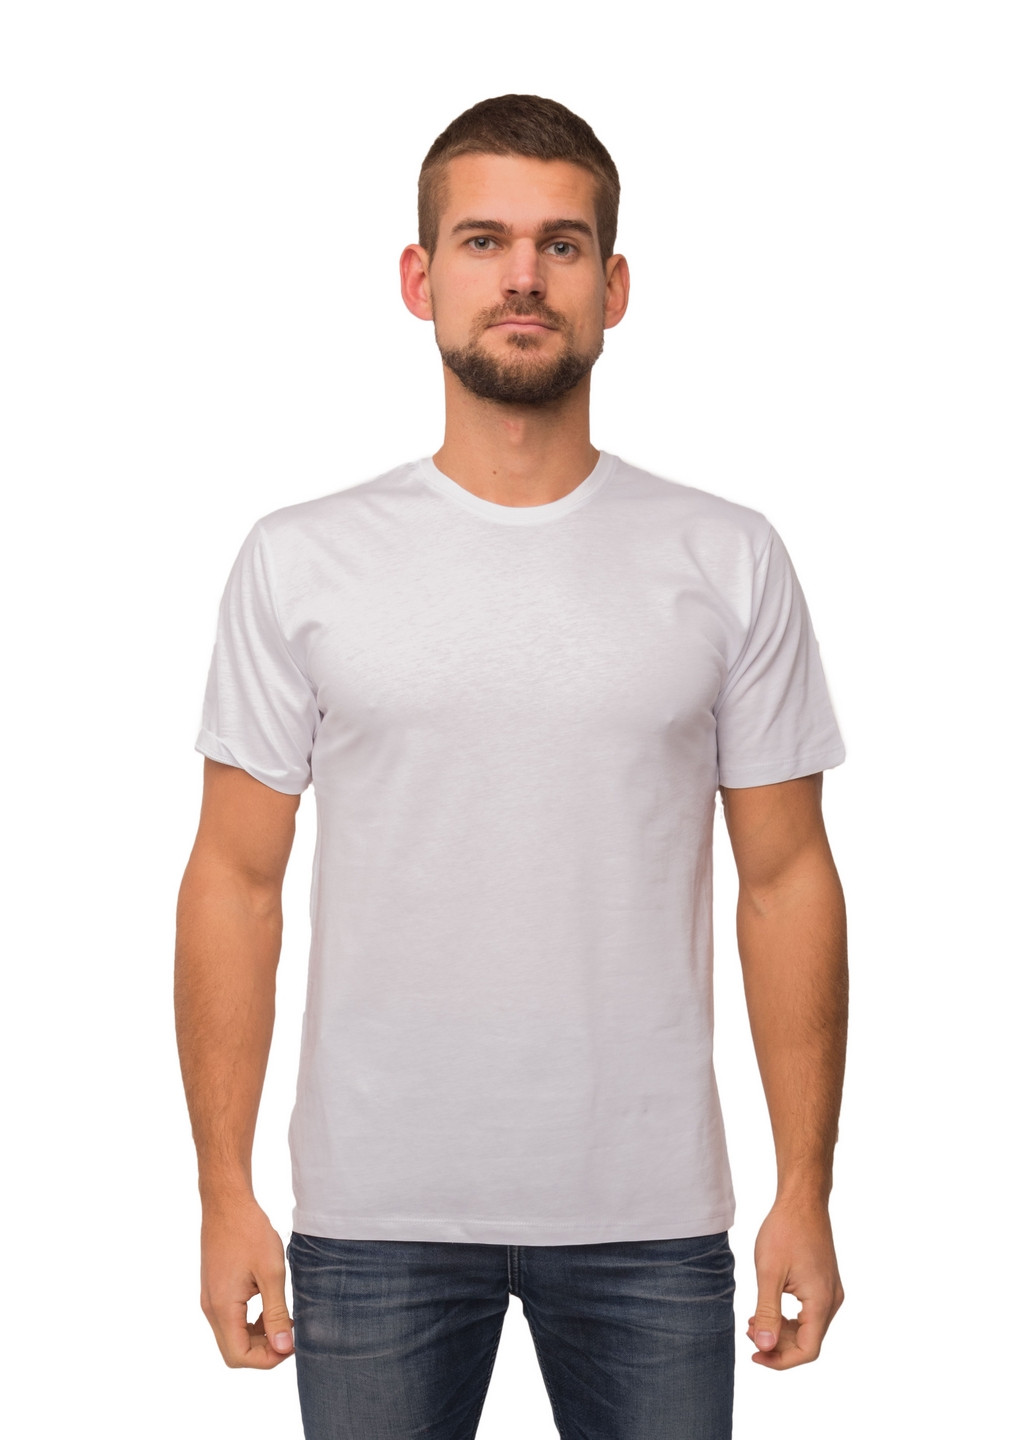 Белая футболка мужская Наталюкс 12-1343